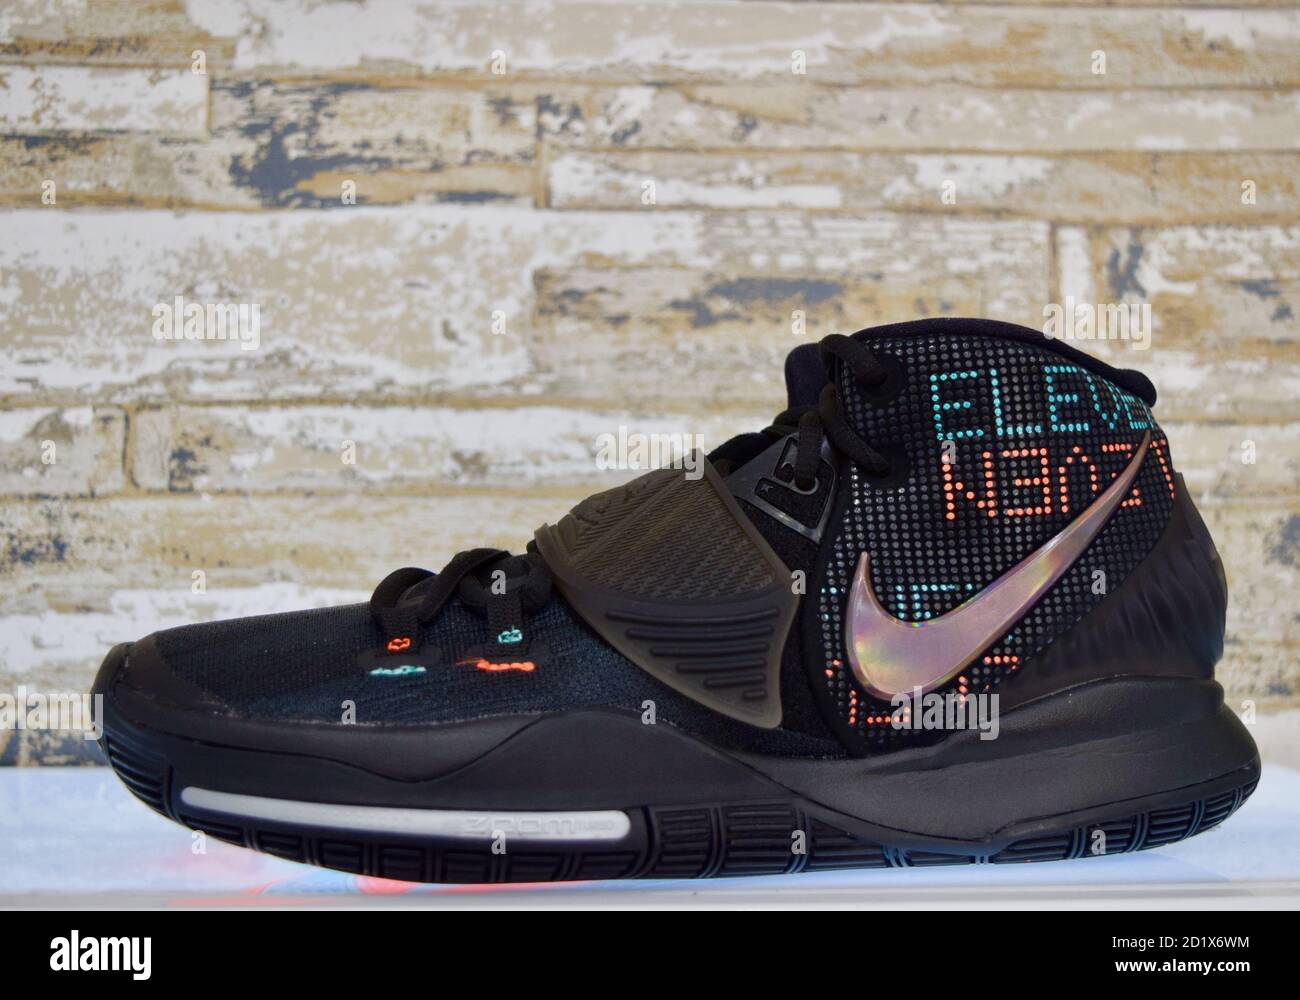 FRESNO, ÉTATS-UNIS - 01 septembre 2020 : une vue latérale Nouvelle  chaussure Nike montante noire avec bande Velcro et logo rose sur le côté  avec éclairage coloré sous la chaussure Photo Stock - Alamy